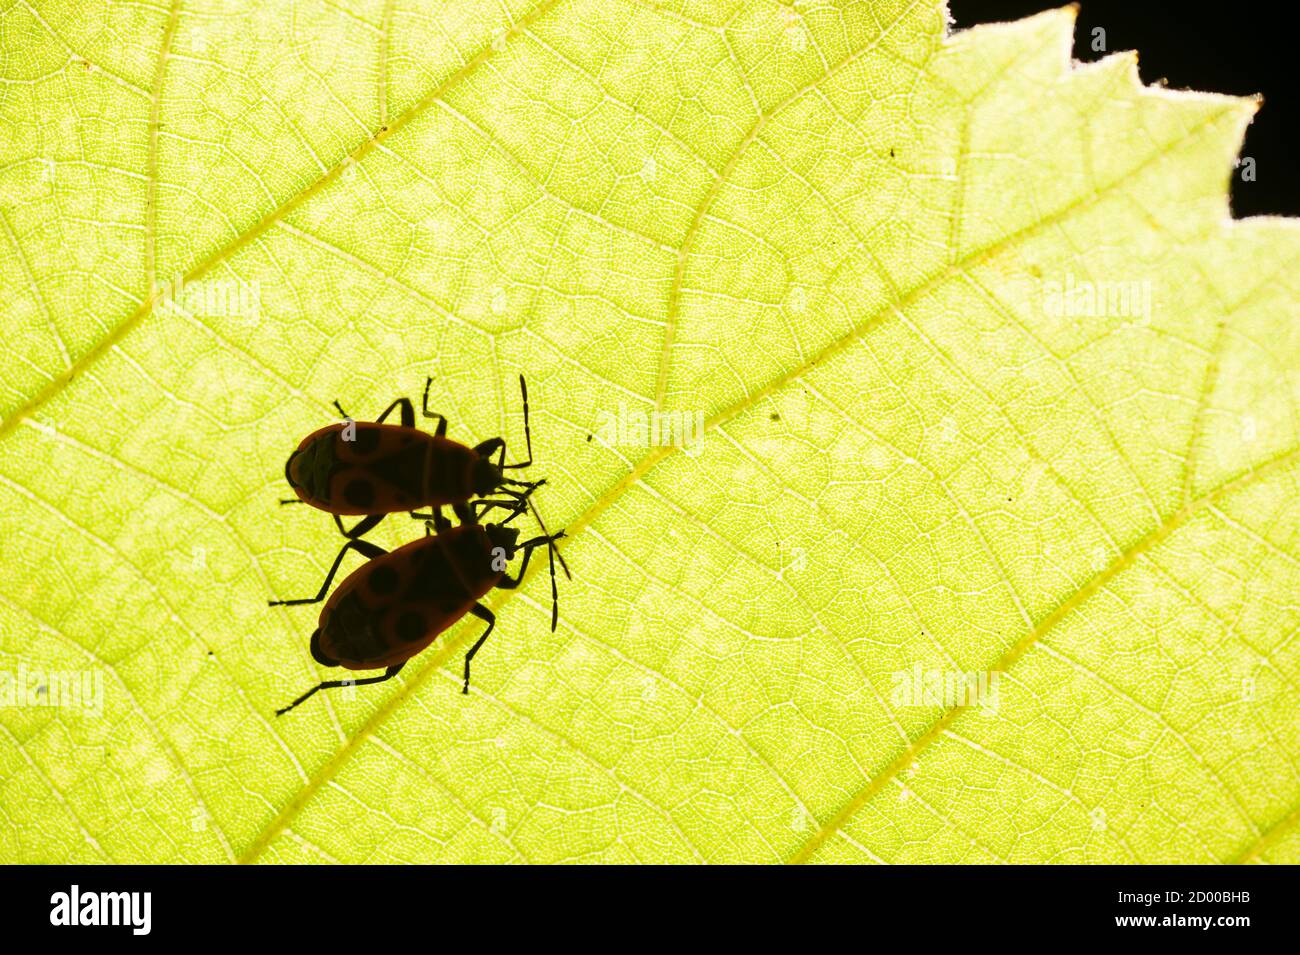 feuerbug, Pyrrhocoris apterus, gemeines Insekt der Familie Pyrrhocoridae, unter einem Blatt. Stockfoto